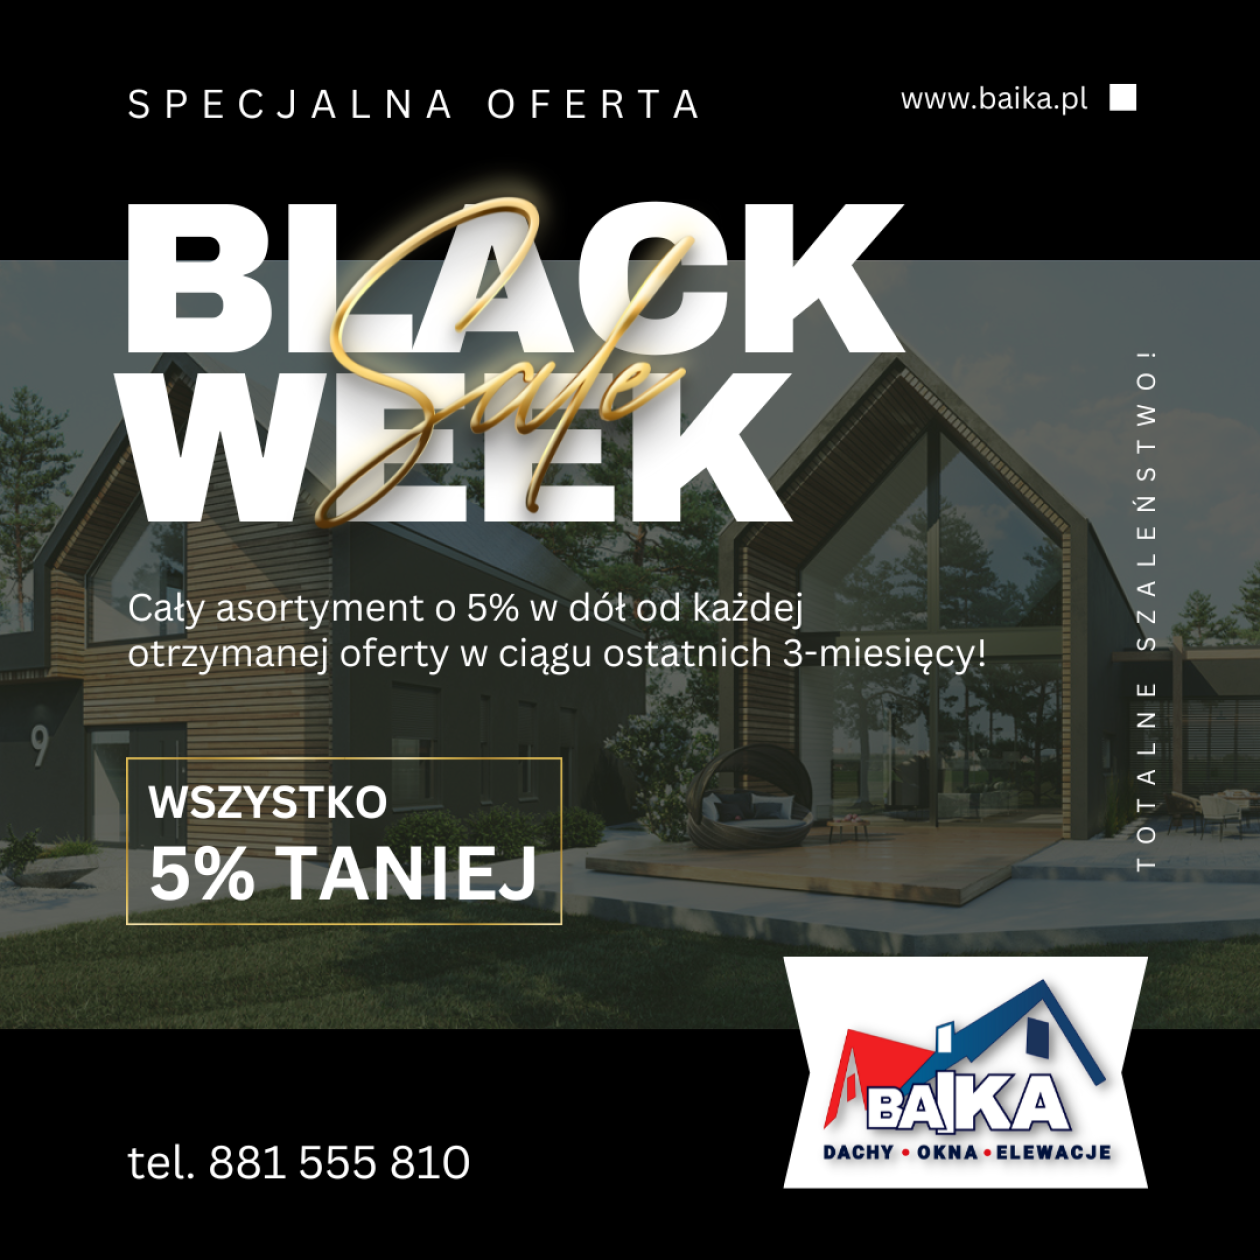 Black Week w BAiKA – Dachy, Okna, Elewacje